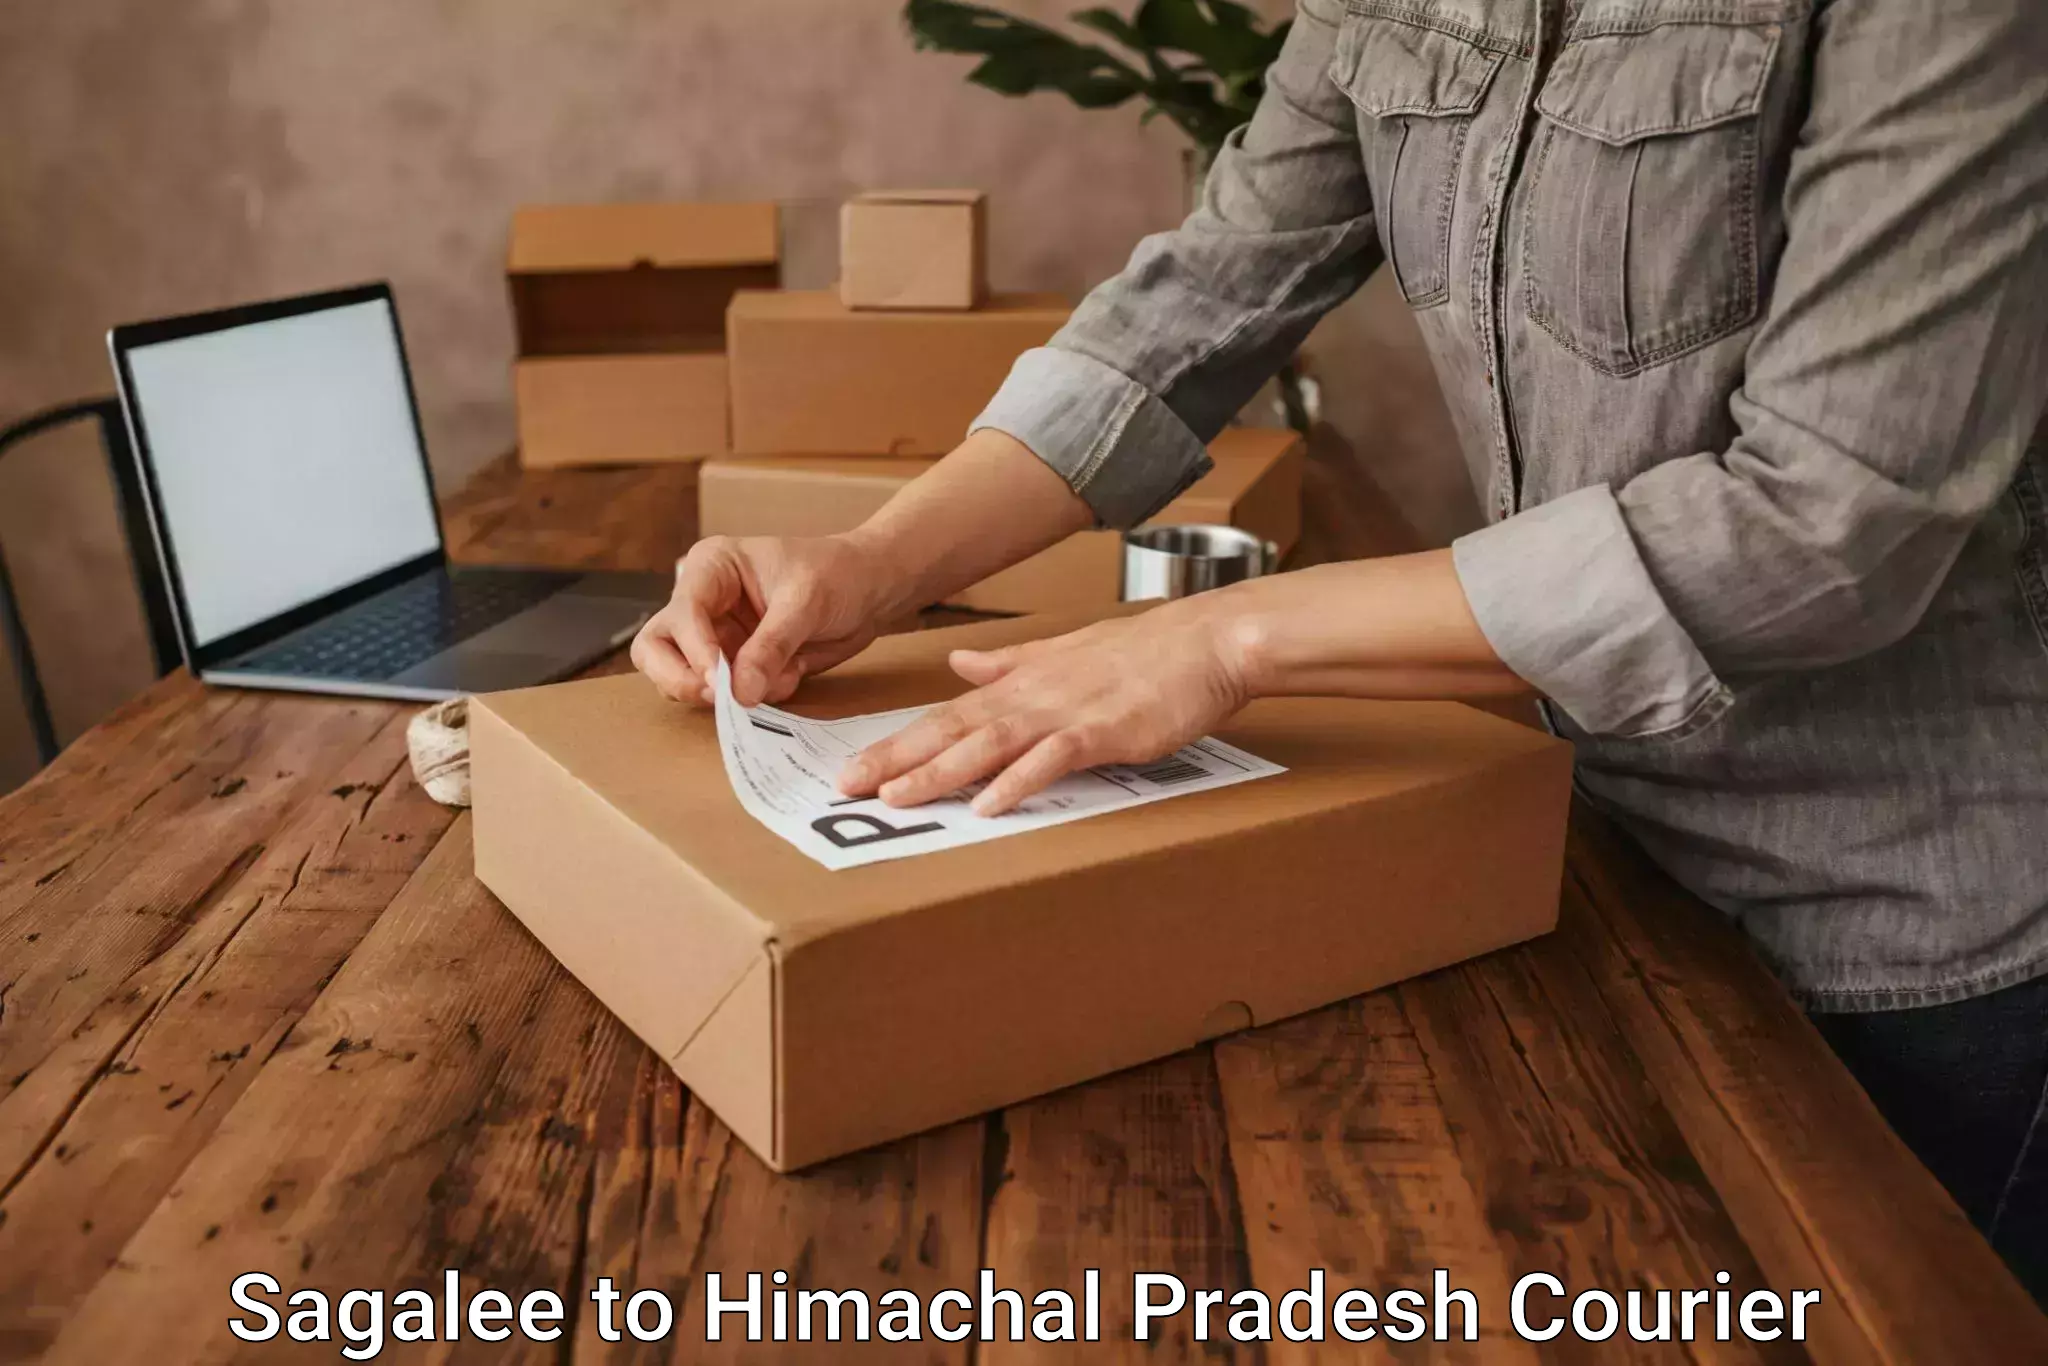 Cargo delivery service Sagalee to Himachal Pradesh